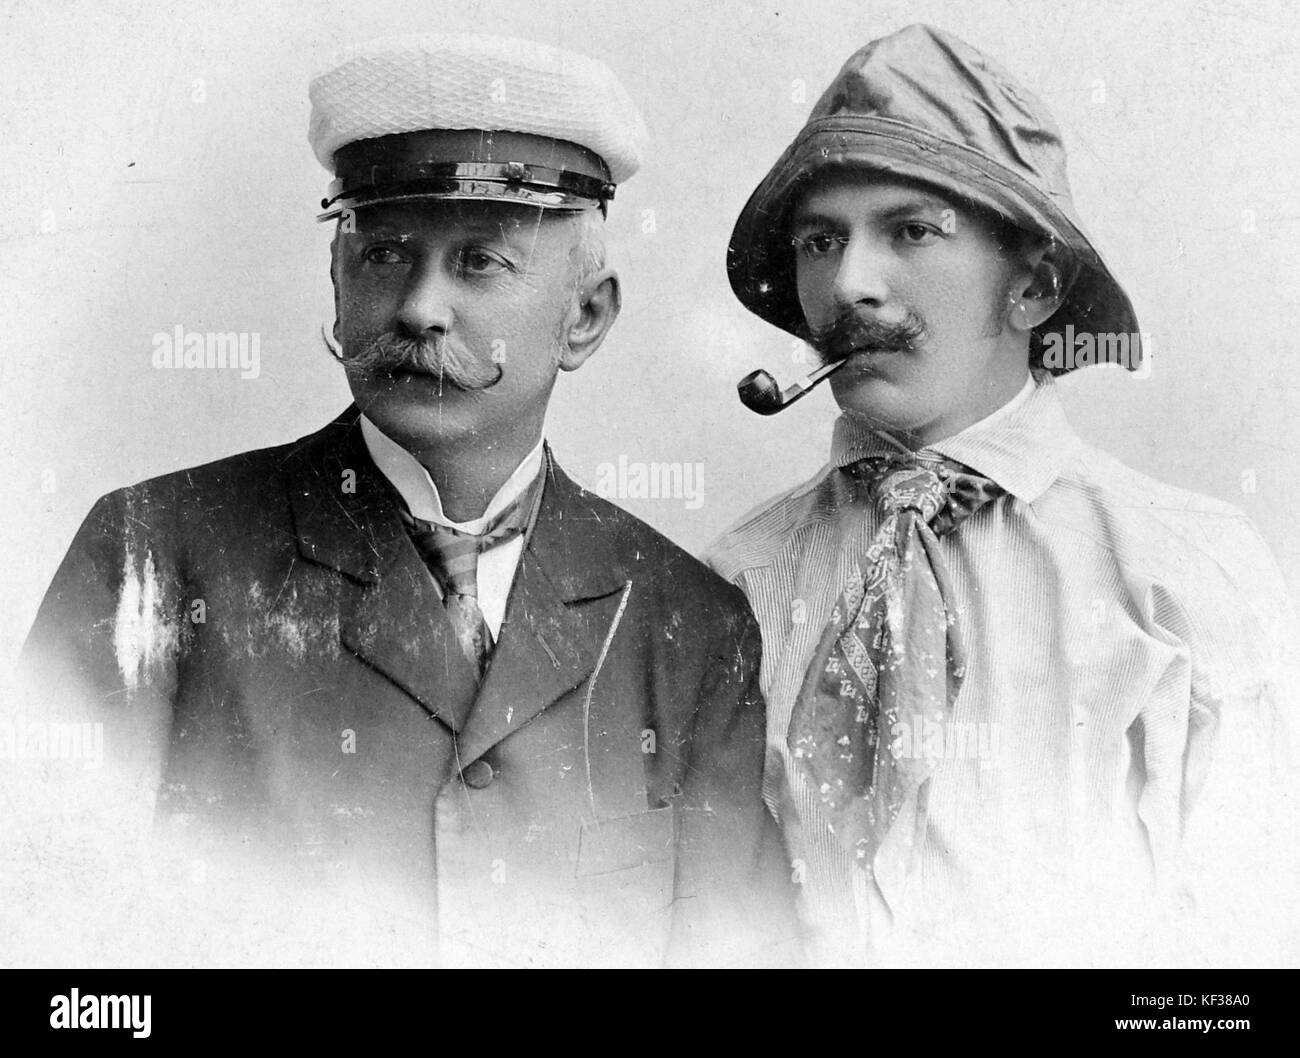 Pipe, men, sou'wester, sailor, moustache, tie  4340 Stock Photo